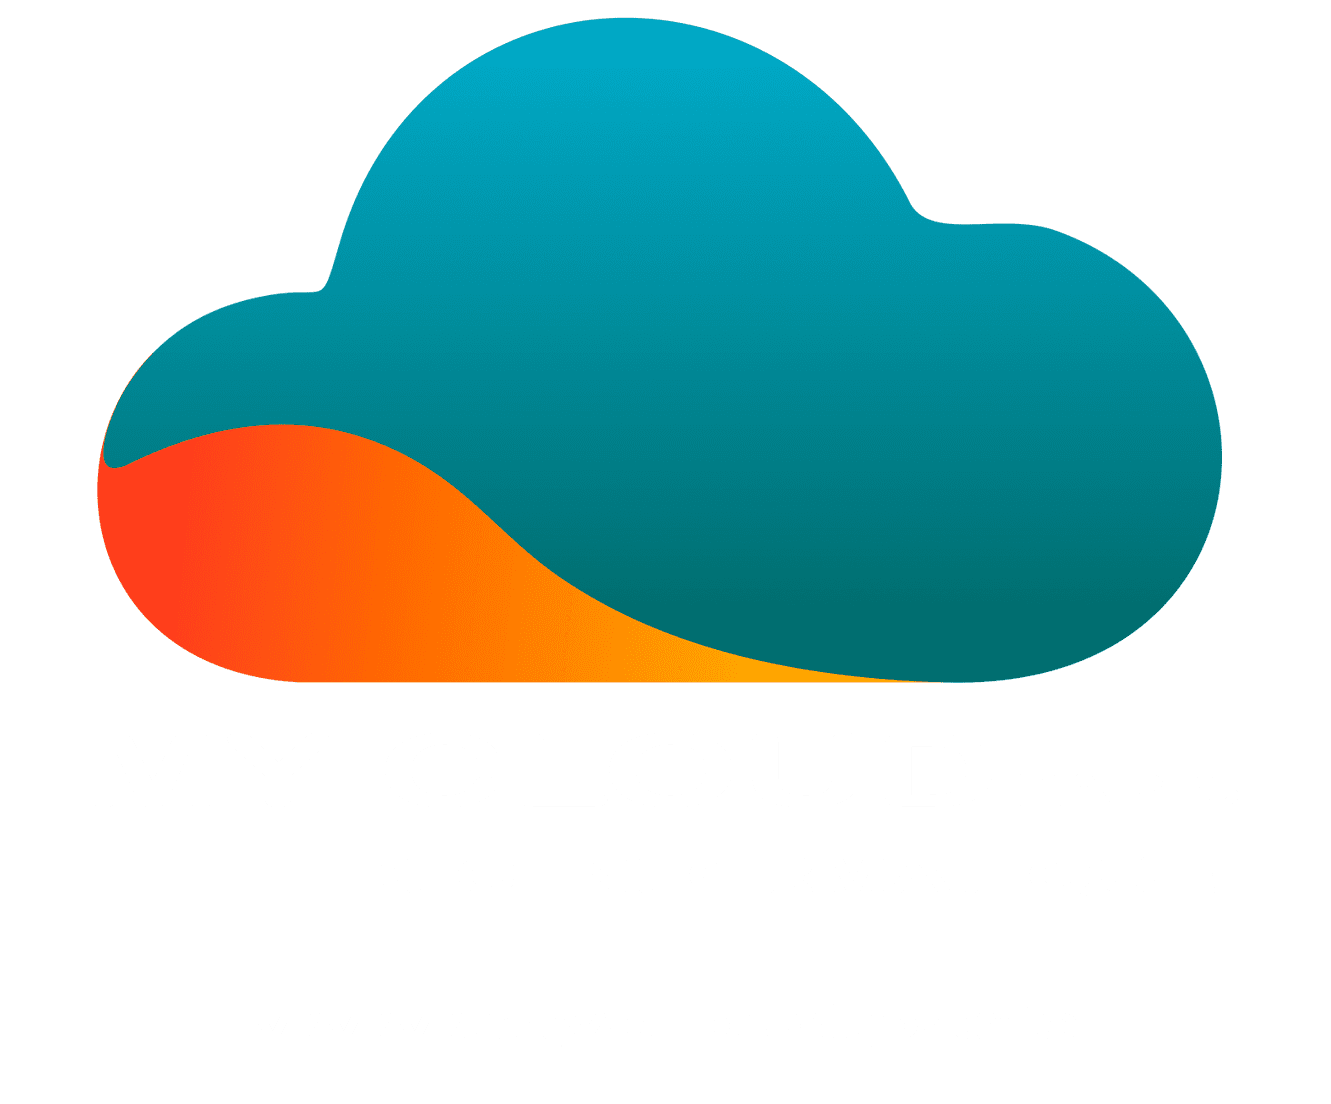 MyCloud.paris logo light